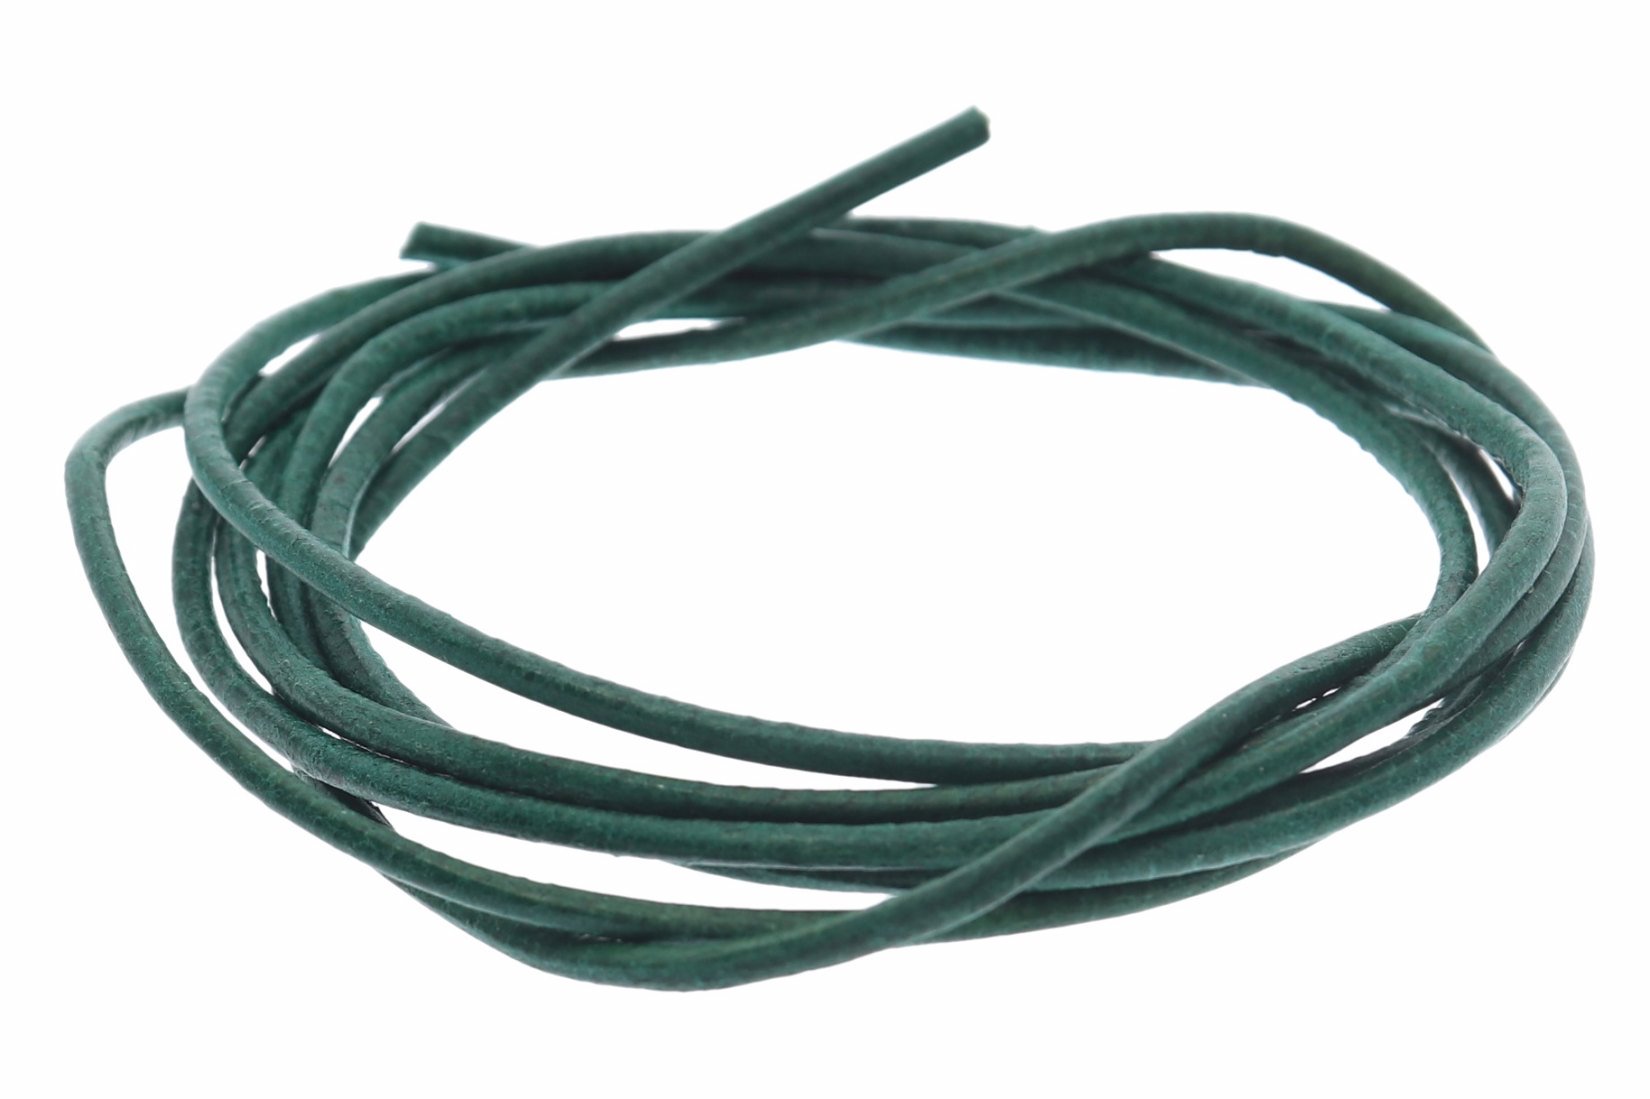 Lederband dunkel grün -  Lederbänder Lederriemen Lederschnur 1.5mm Ø - 100cm L120